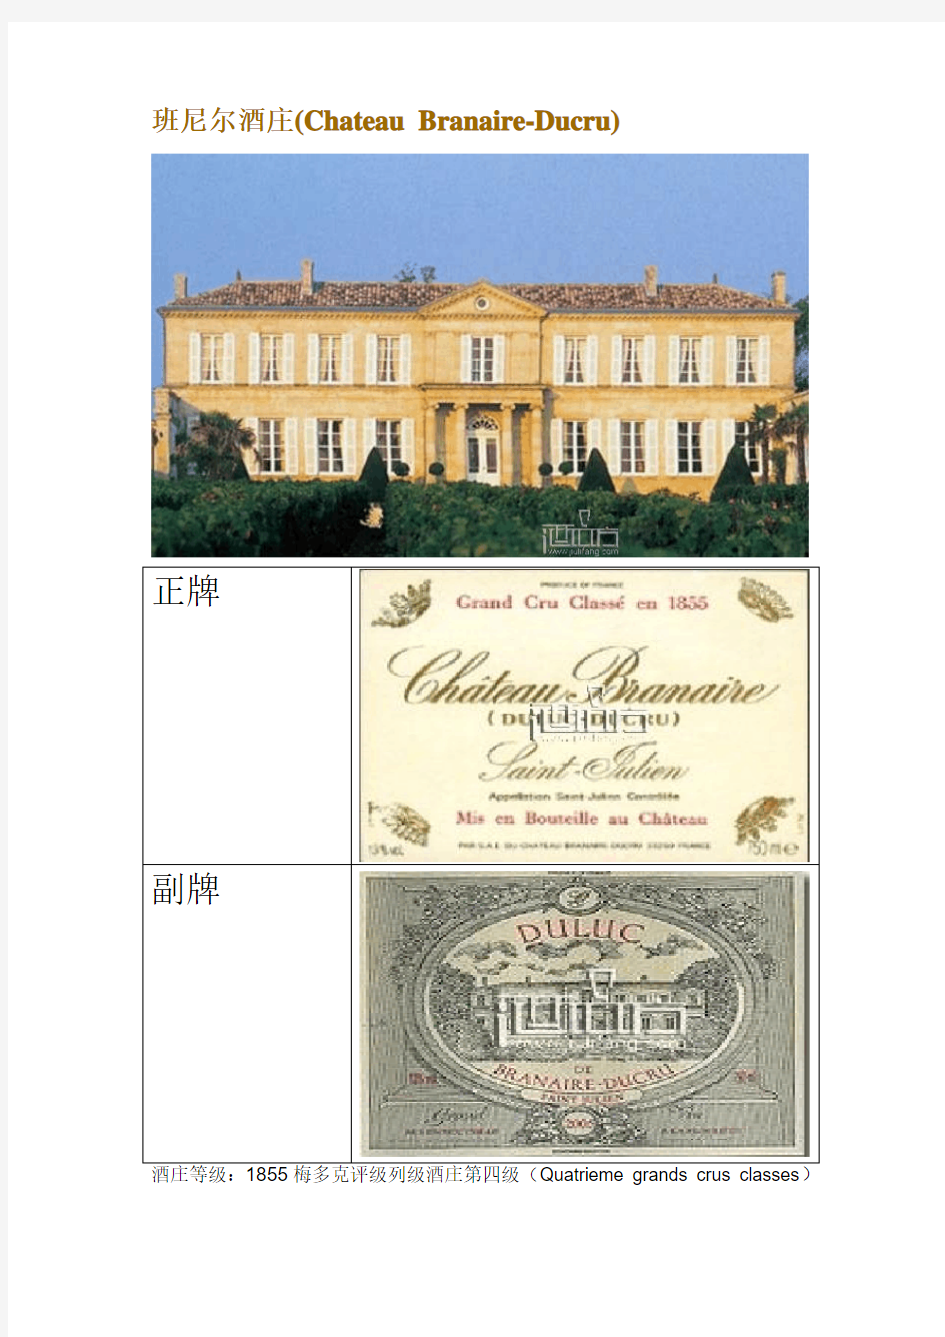 1855梅多克评级列级法国红酒酒庄第四级